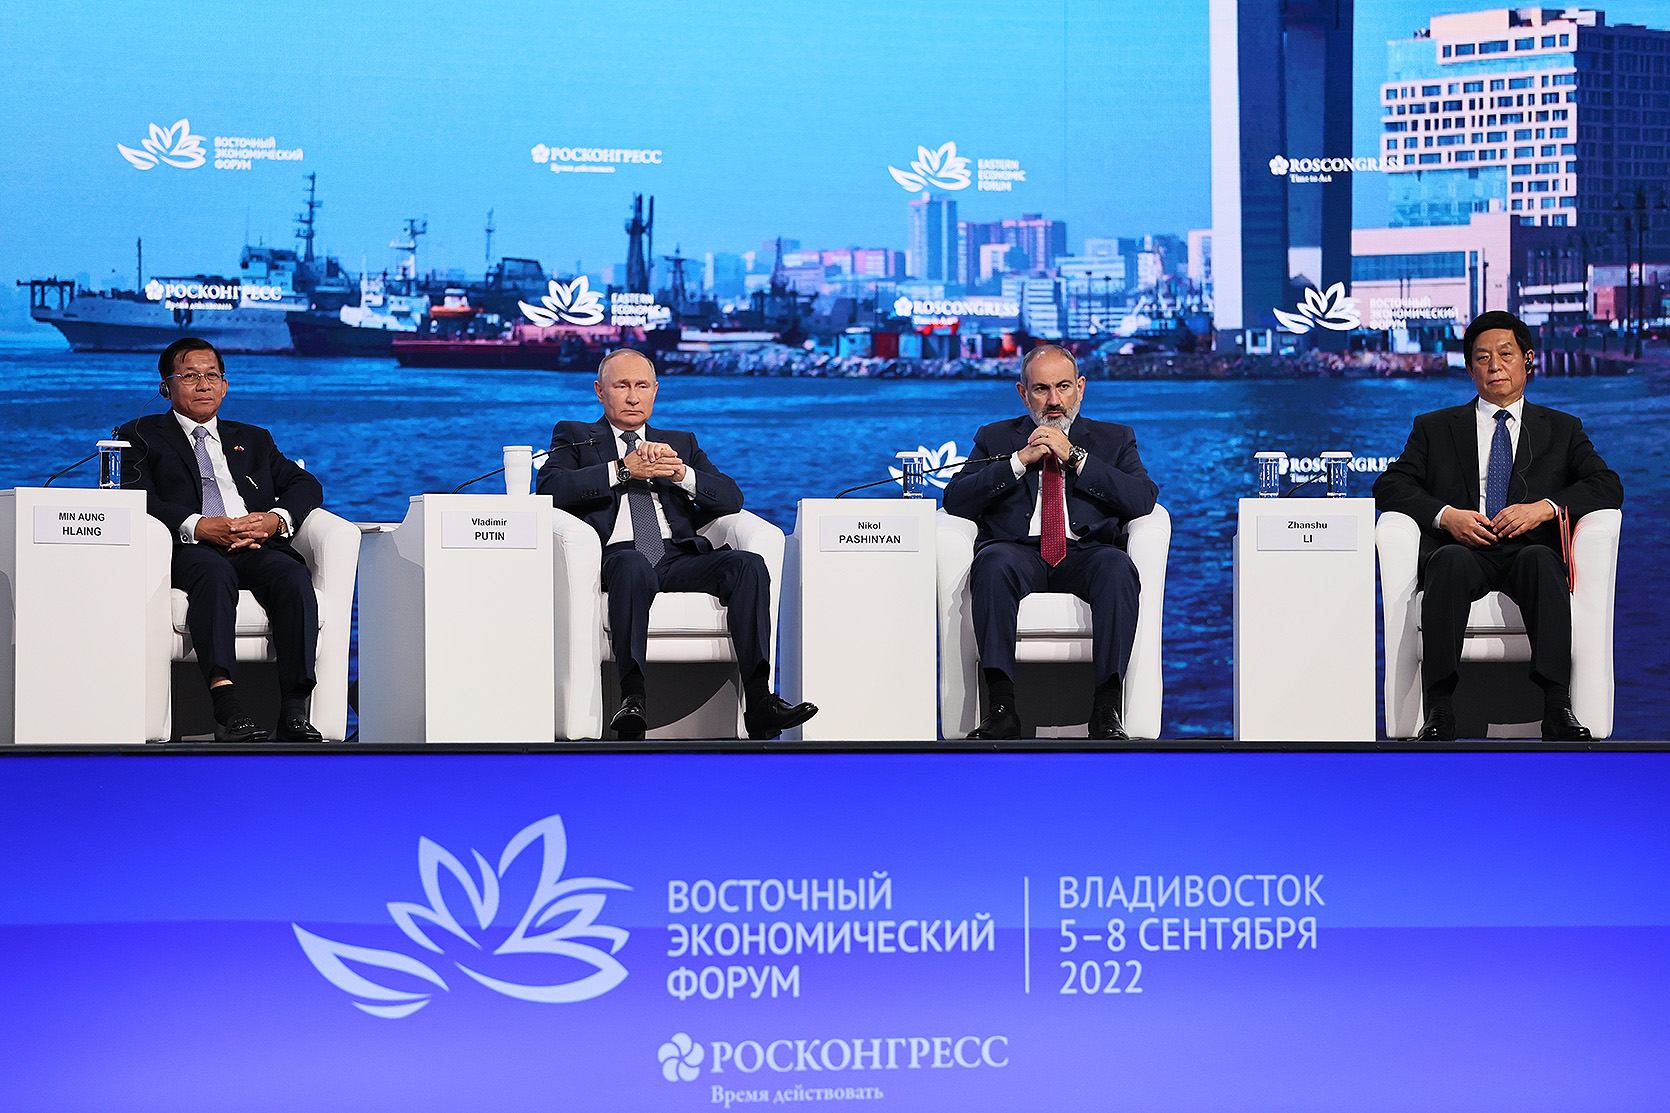 Հուսով ենք՝ ՌԴ և մեր գործընկերների հետ սերտ համագործակցությամբ կկարողանանք կառավարել ու մեր տարածաշրջանային իրավիճակը պահել վերահսկողության ներքո. Վարչապետը մասնակցել է Արևելյան տնտեսական համաժողովի լիագումար նստաշրջանին